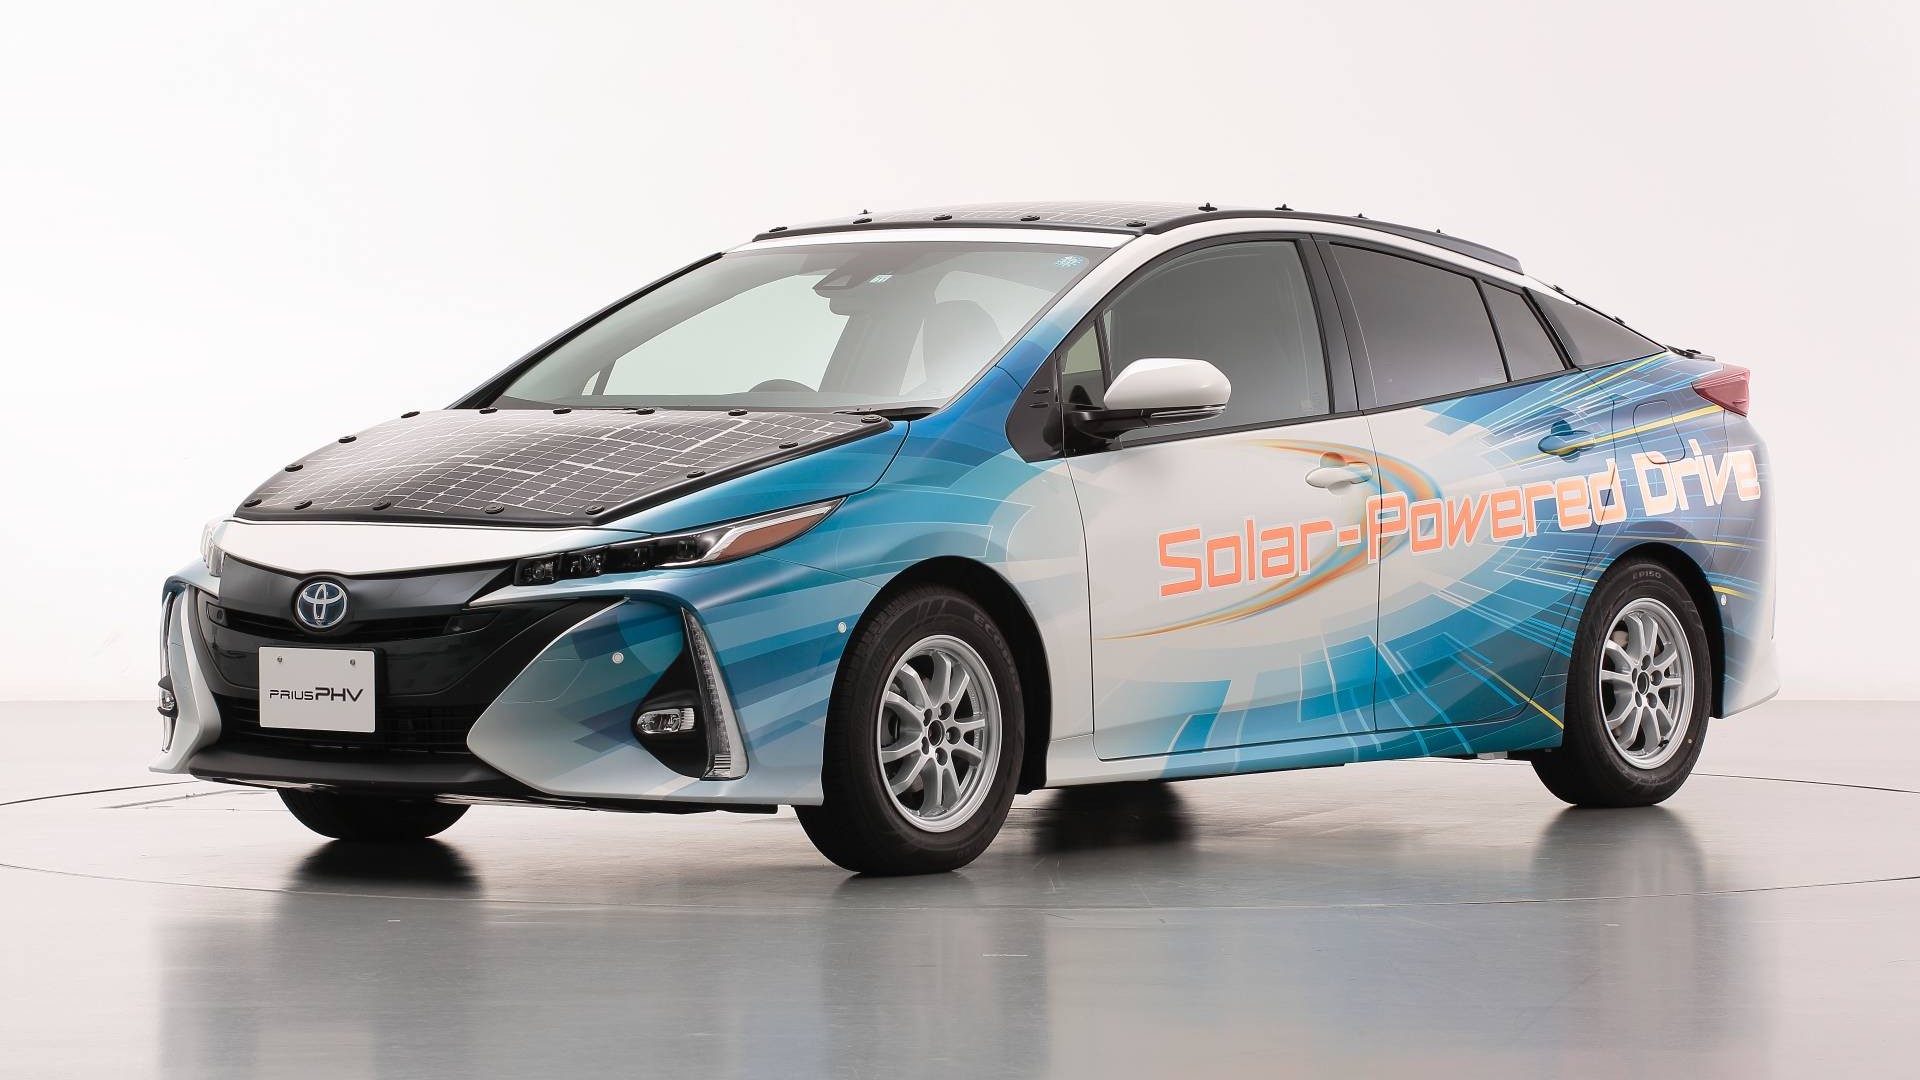 Ένα Toyota Prius με φωτοβολταϊκά πάνελ υψηλής απόδοσης!